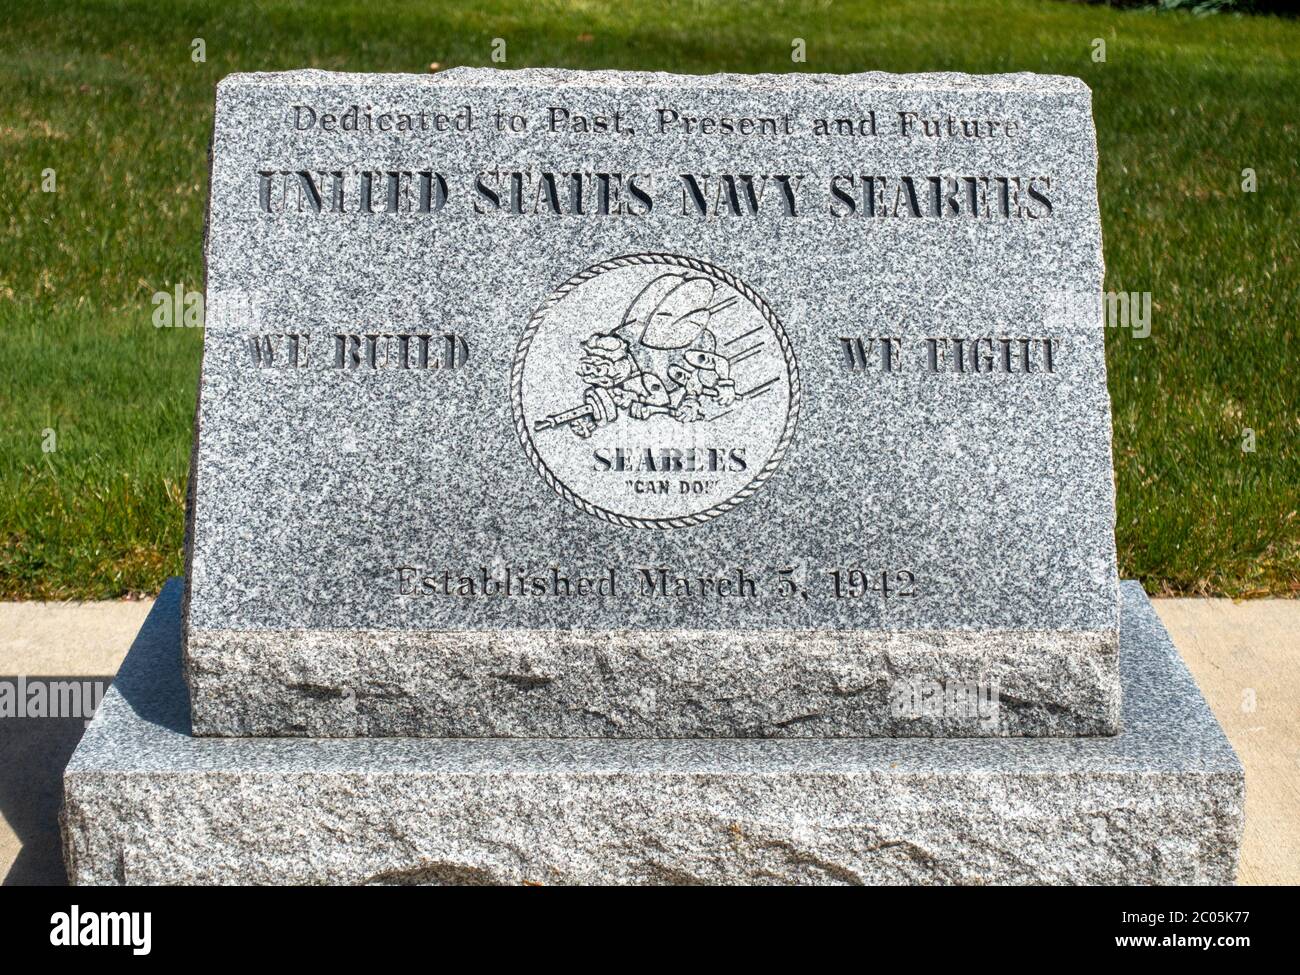 Mémorial en granit gravé dédié aux Seabes de la Marine des États-Unis d'hier, d'aujourd'hui et de demain. Nous construisons, nous combattons les Seabees peuvent faire! Créé en mars 5 1942 Banque D'Images